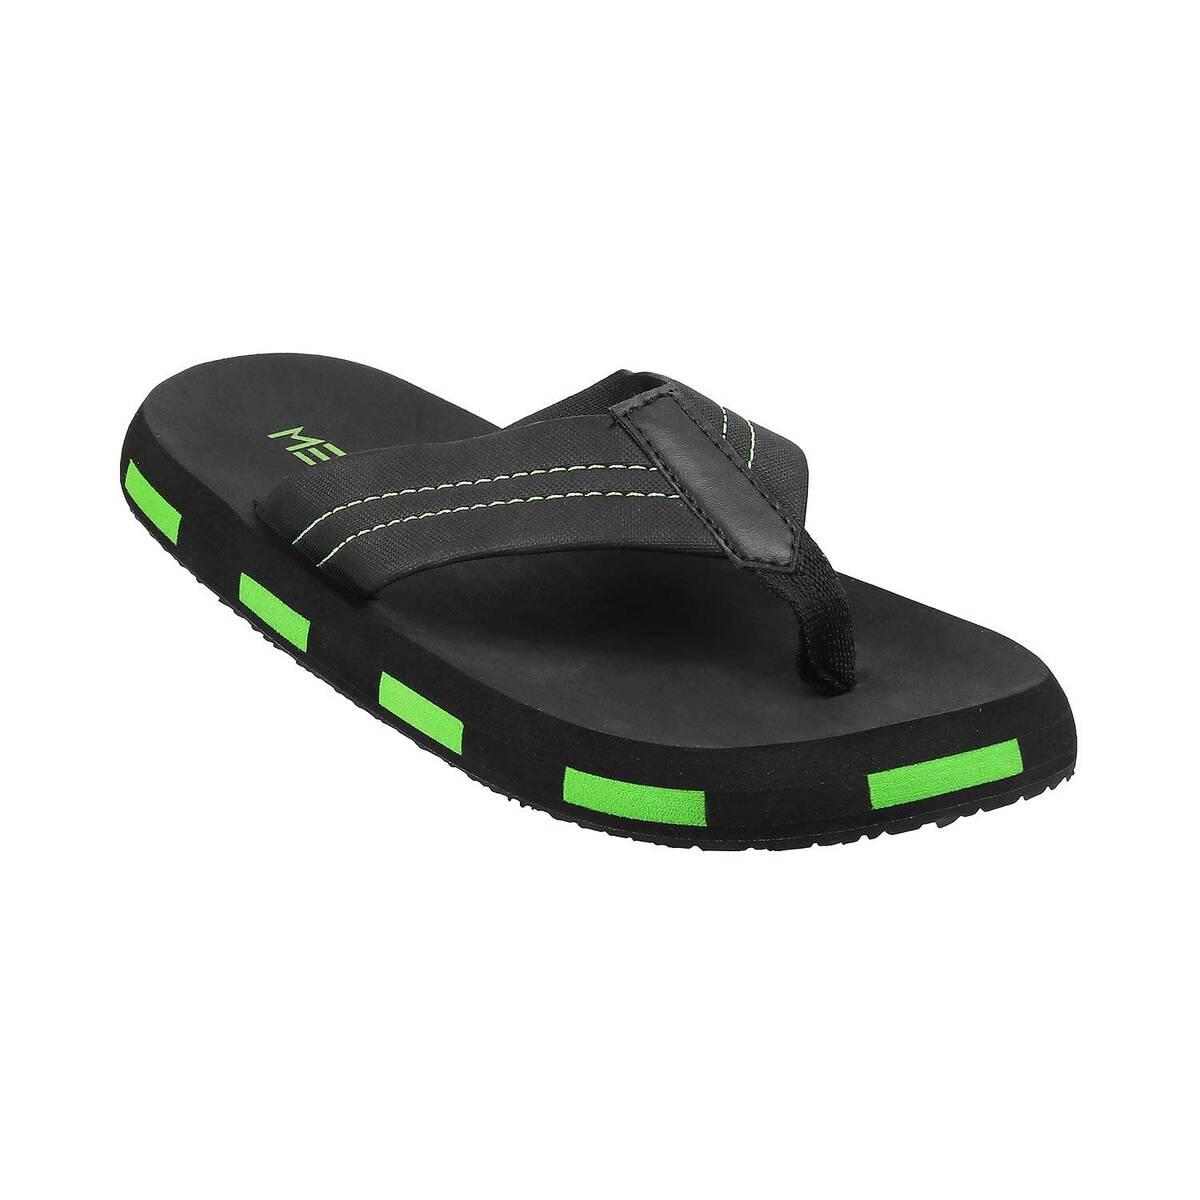 Buy Black Slippers SKU: 207-802-11-40-Metro Shoes